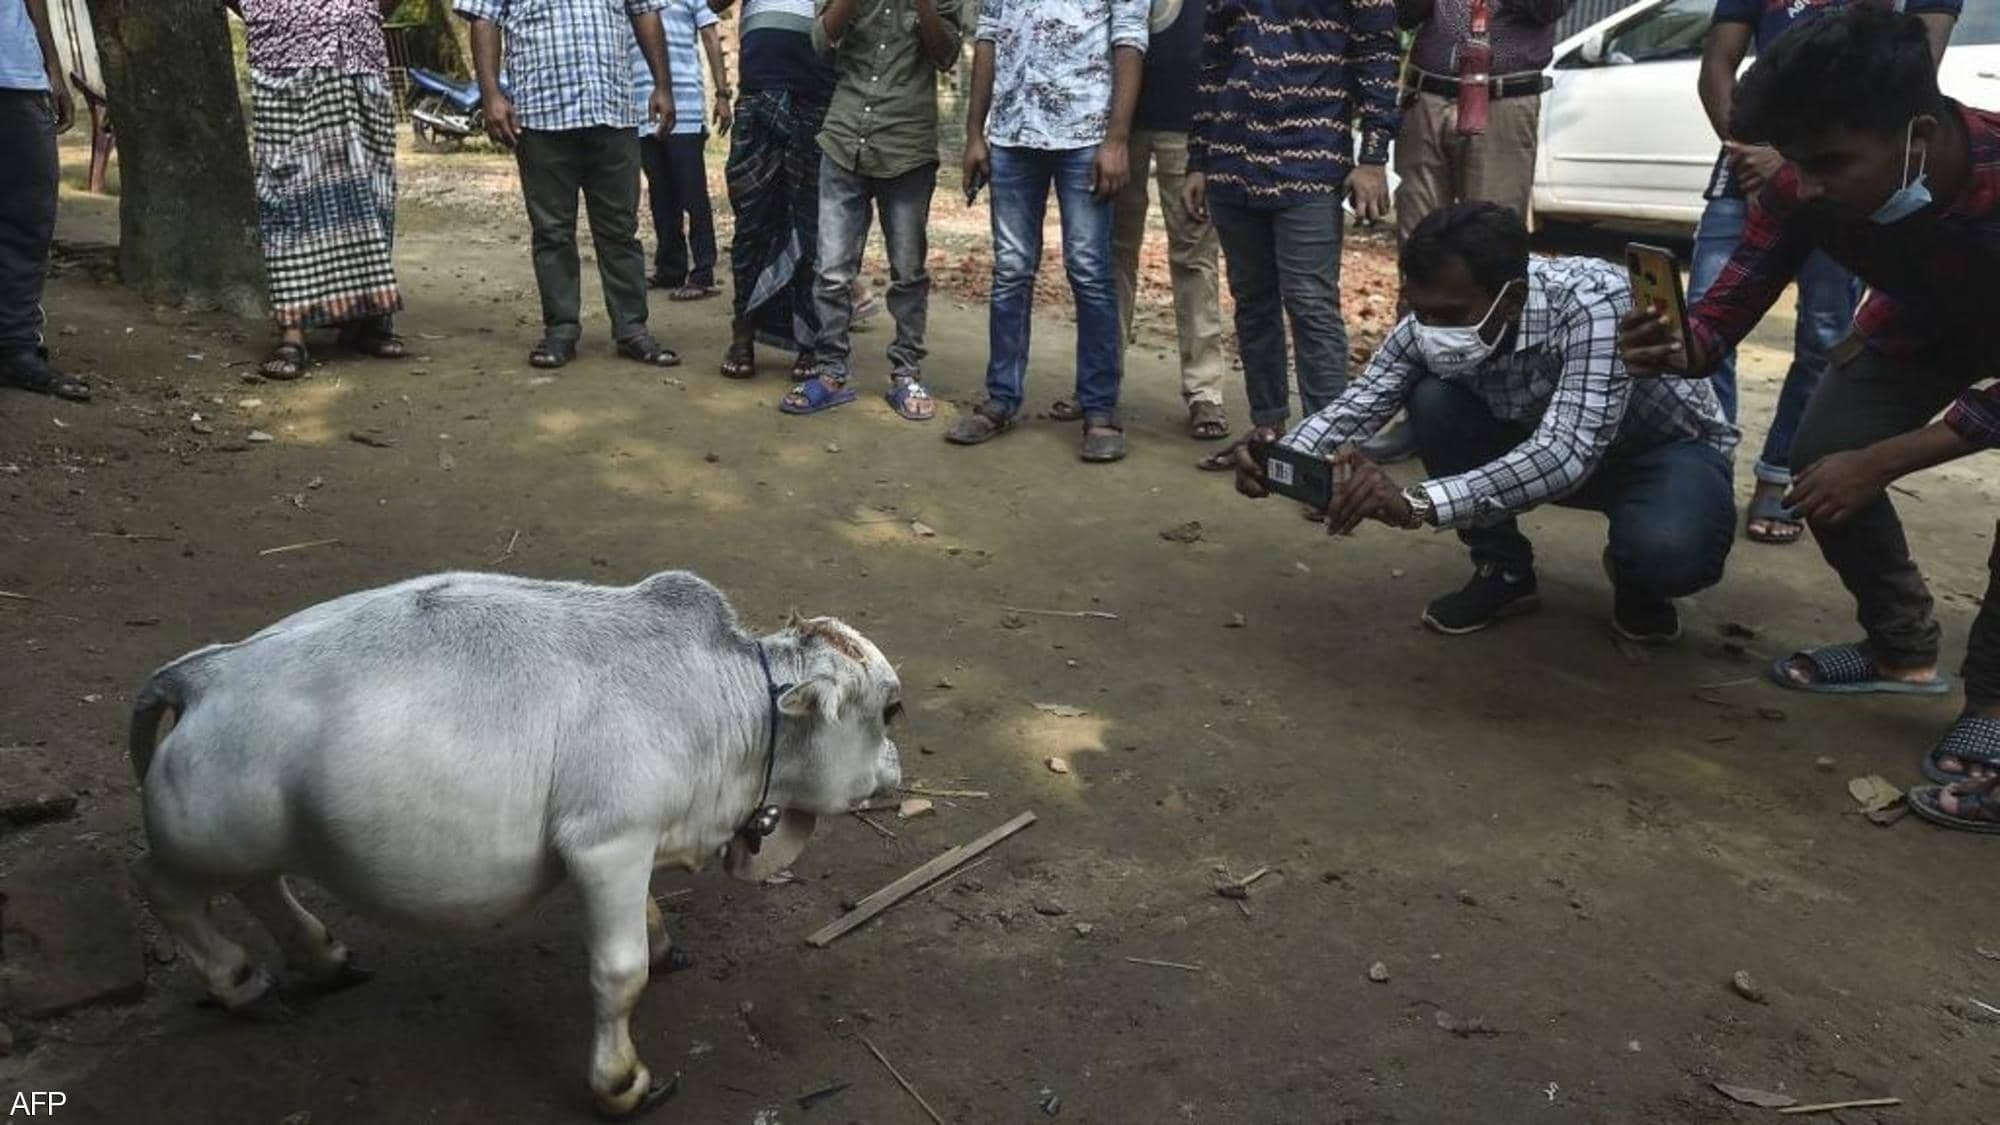 بالفيديو والصور |  الآلاف يخرقون إجراءات كورونا لرؤية "البقرة المعجزة"